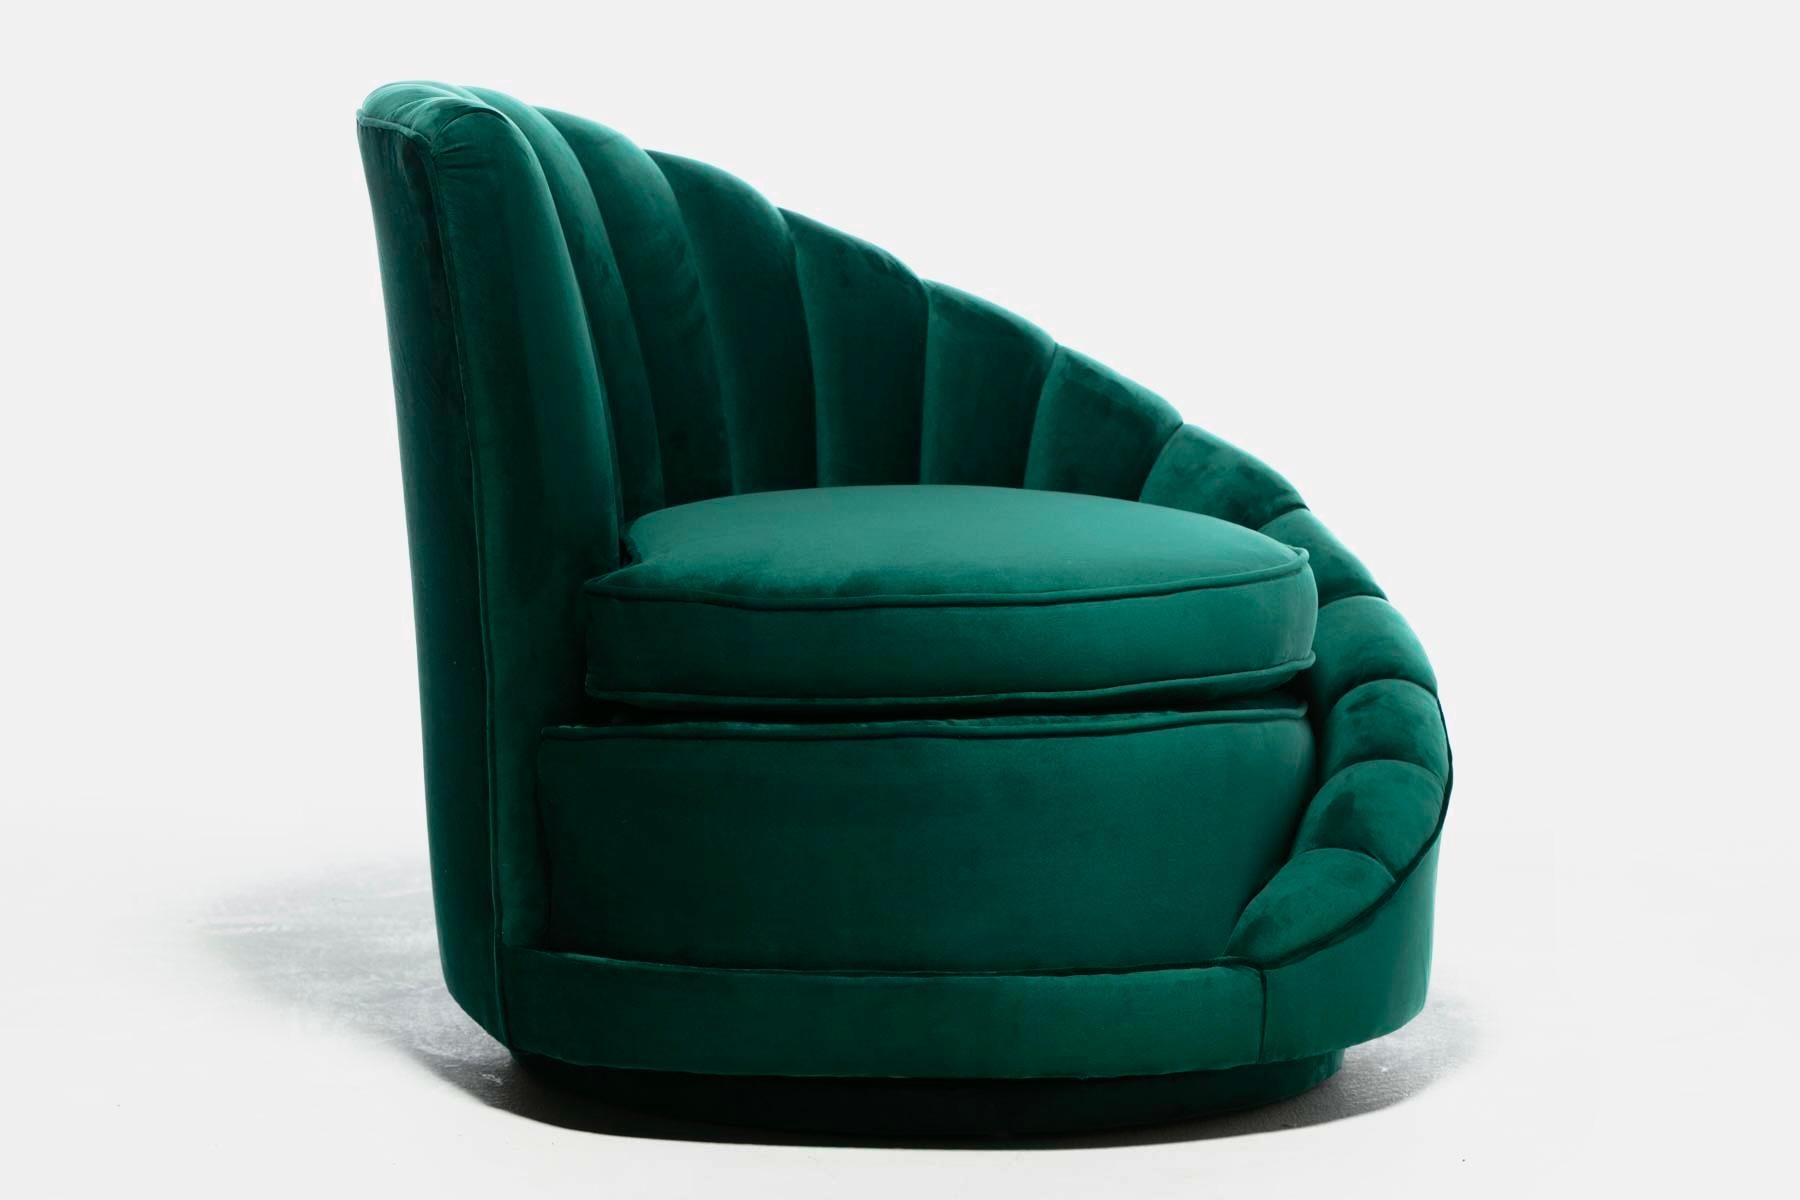 Hollywood Regency Glamorous Asymmetrical Swivel Chairs in Emerald Green Velvet For Sale 3